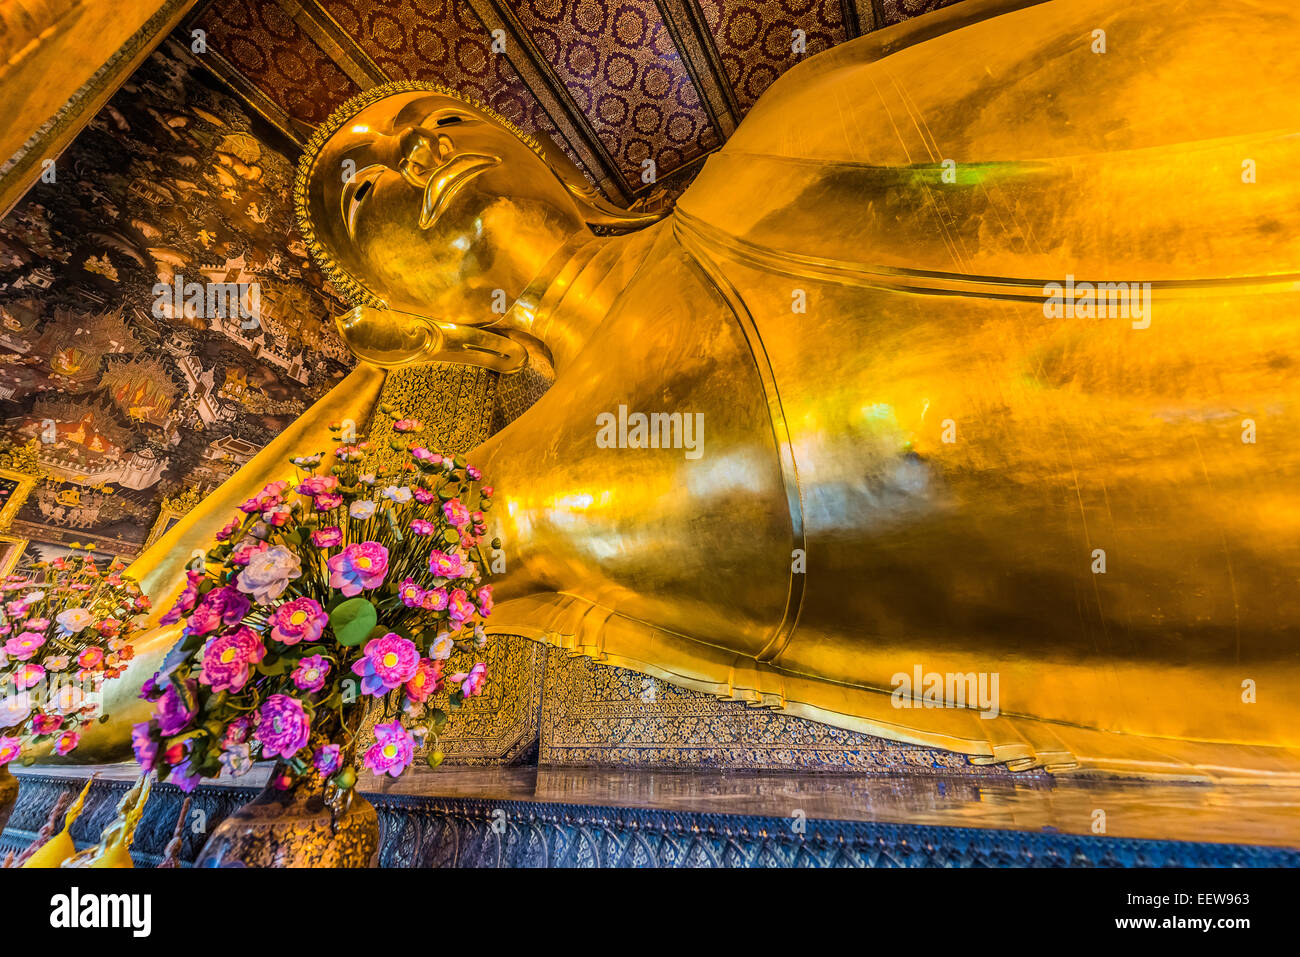 Portrait bouddha couché de Wat Pho à Bangkok Thaïlande temple Banque D'Images